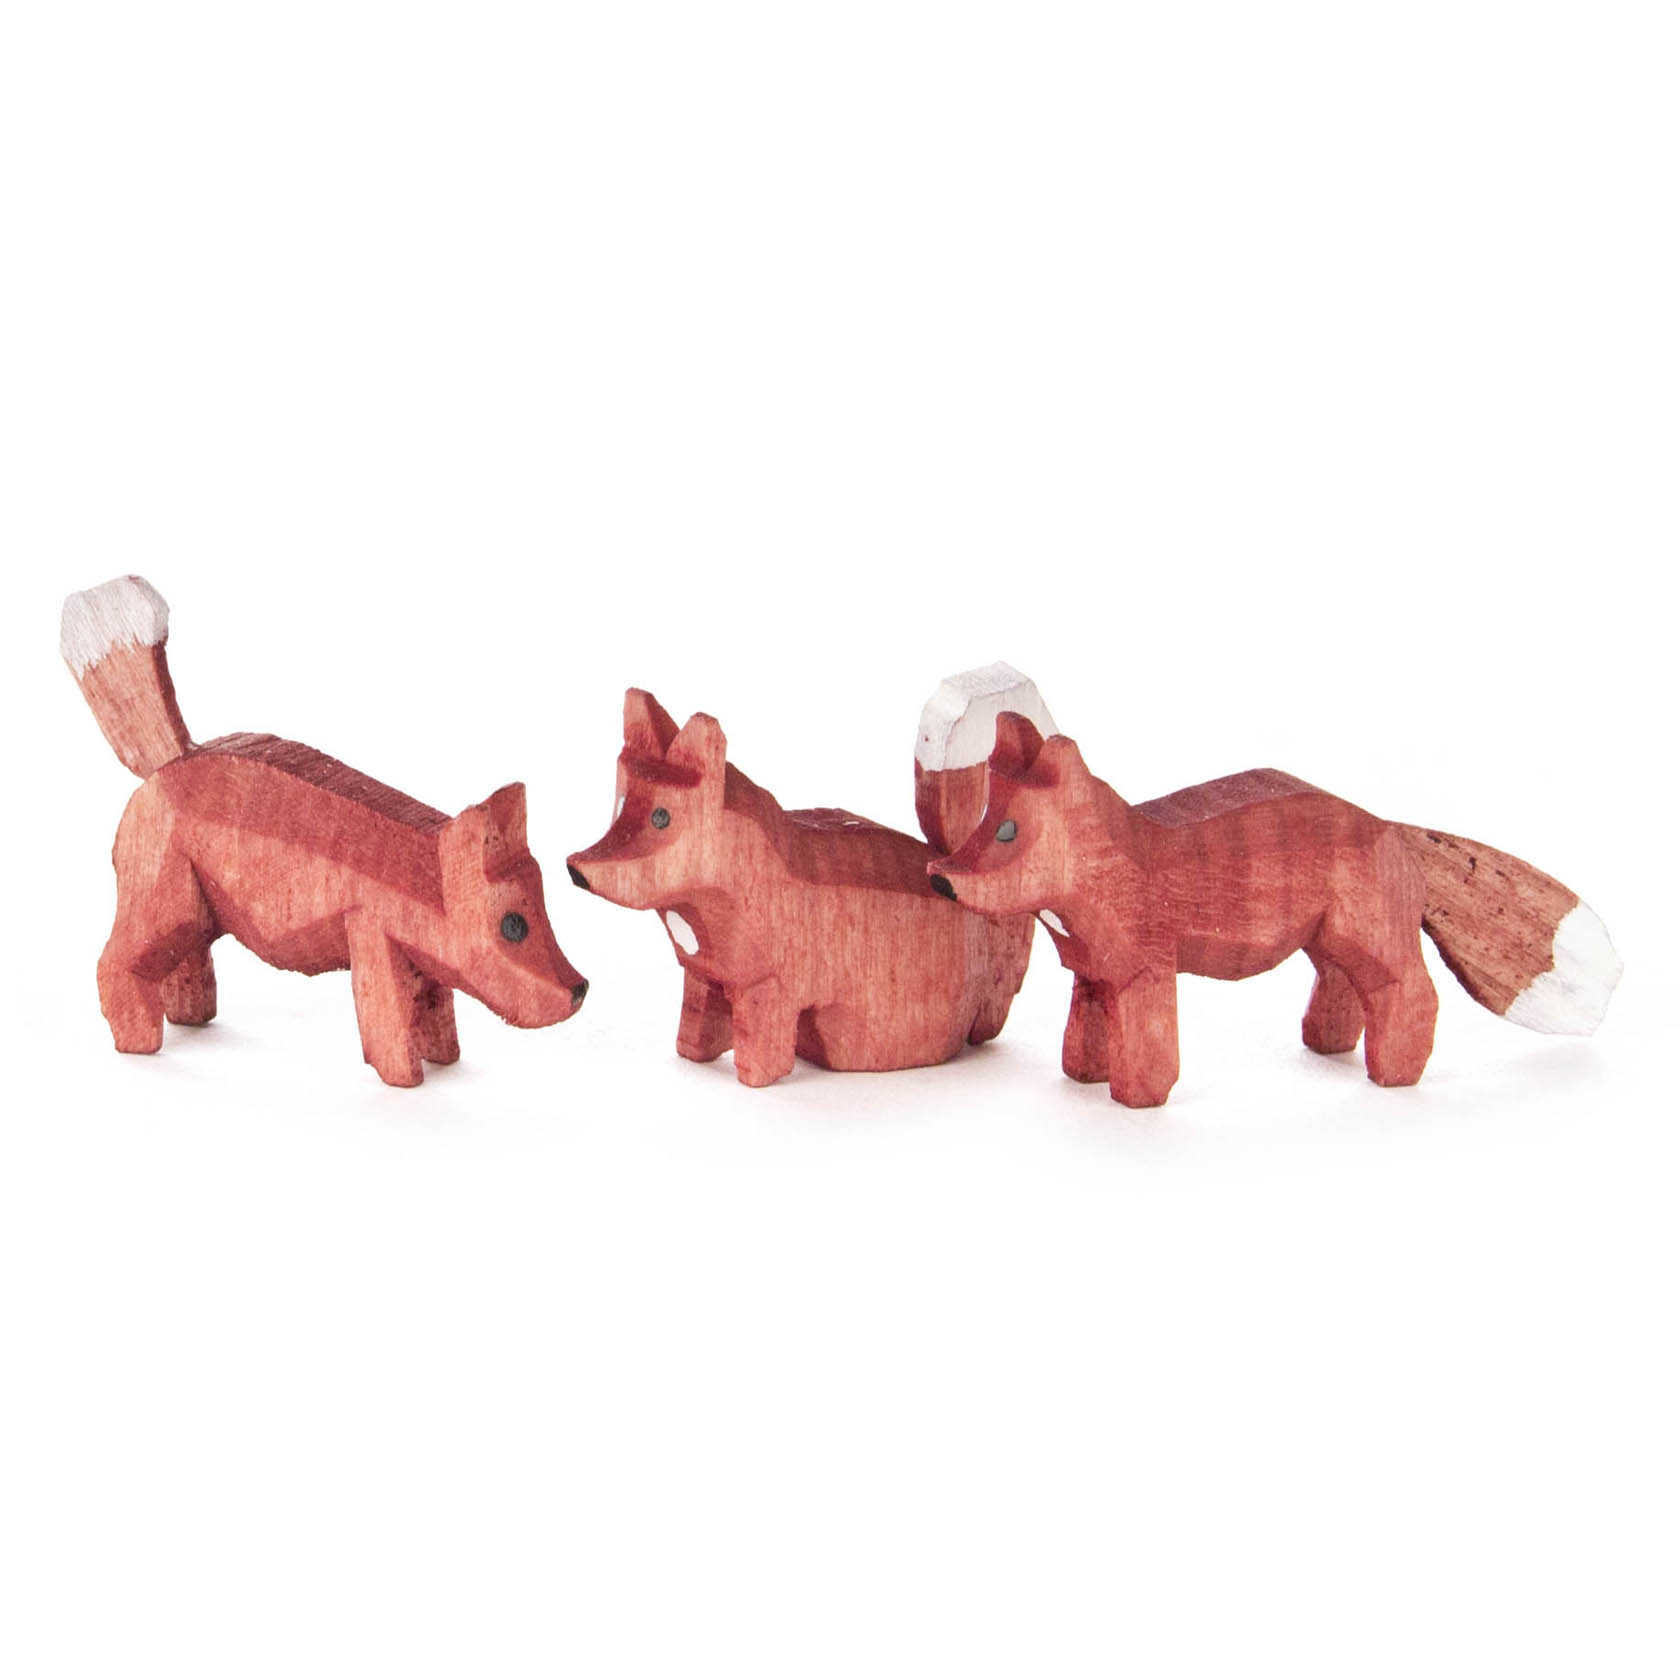 Fuchsgruppe farbig (3) Rückenhöhe 1,5cm Fuchs stehend, sitzend, fauchend im Dregeno Online Shop günstig kaufen